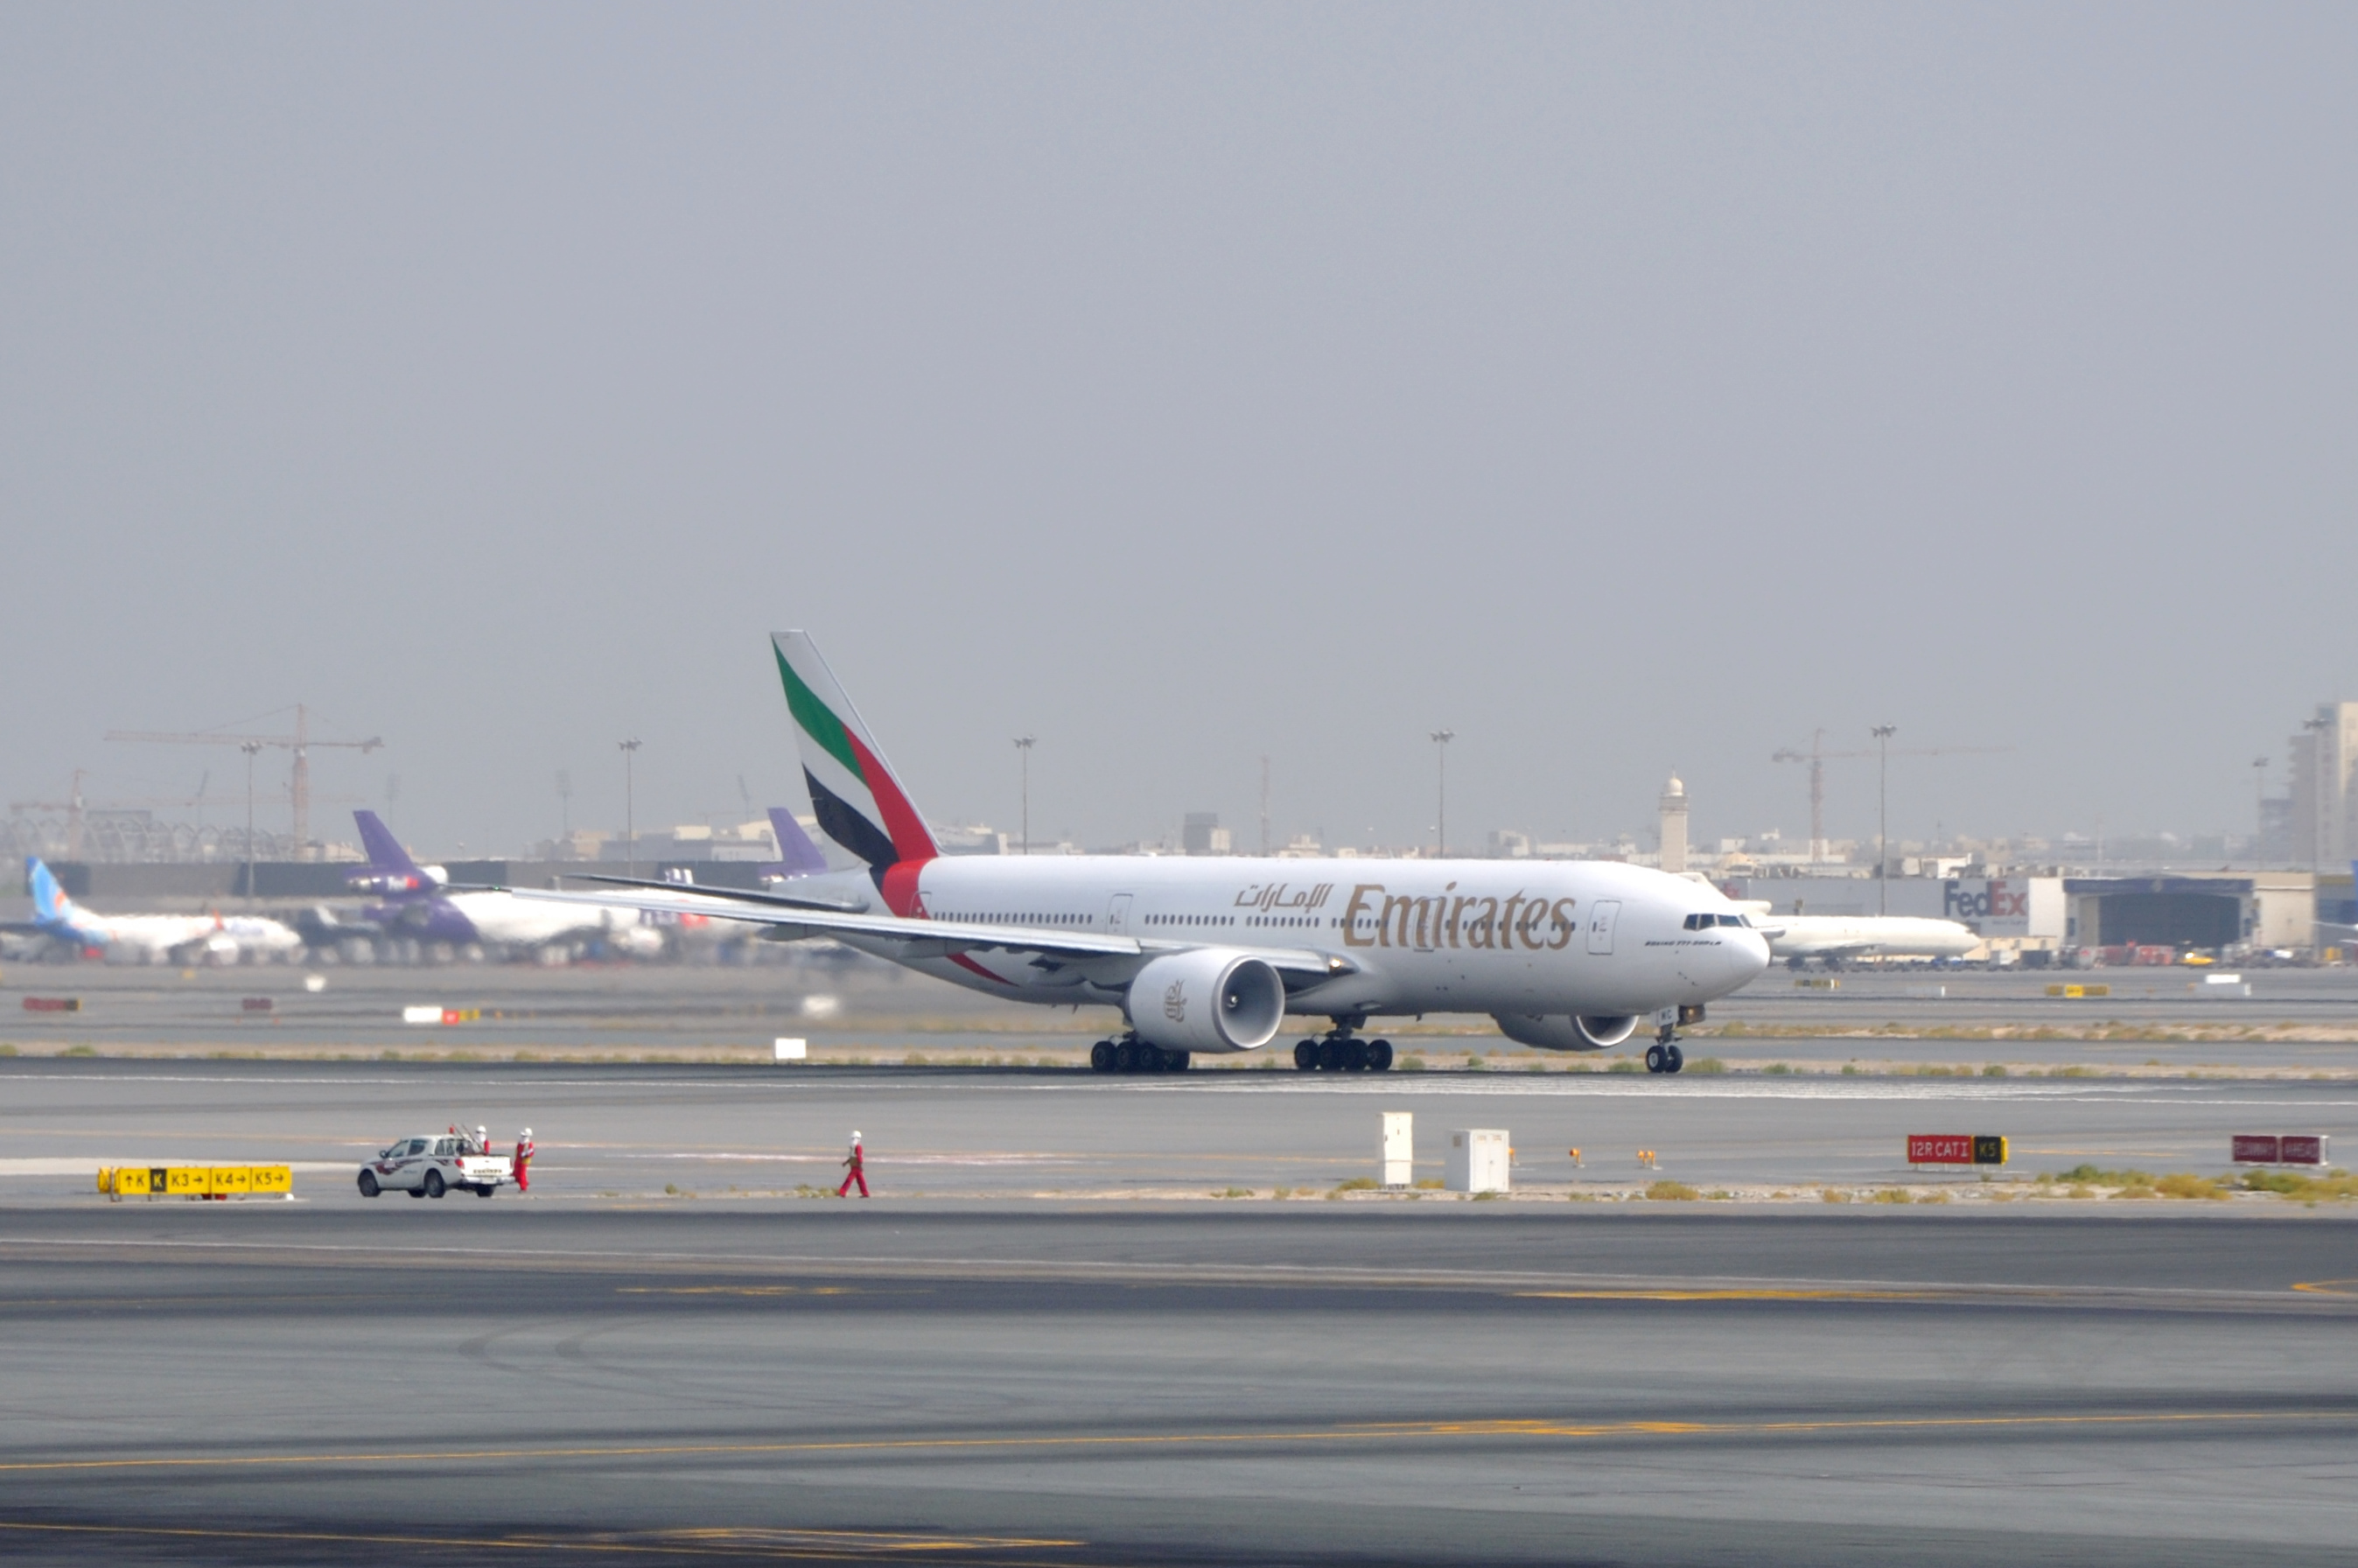 Dubai Airport Pictures